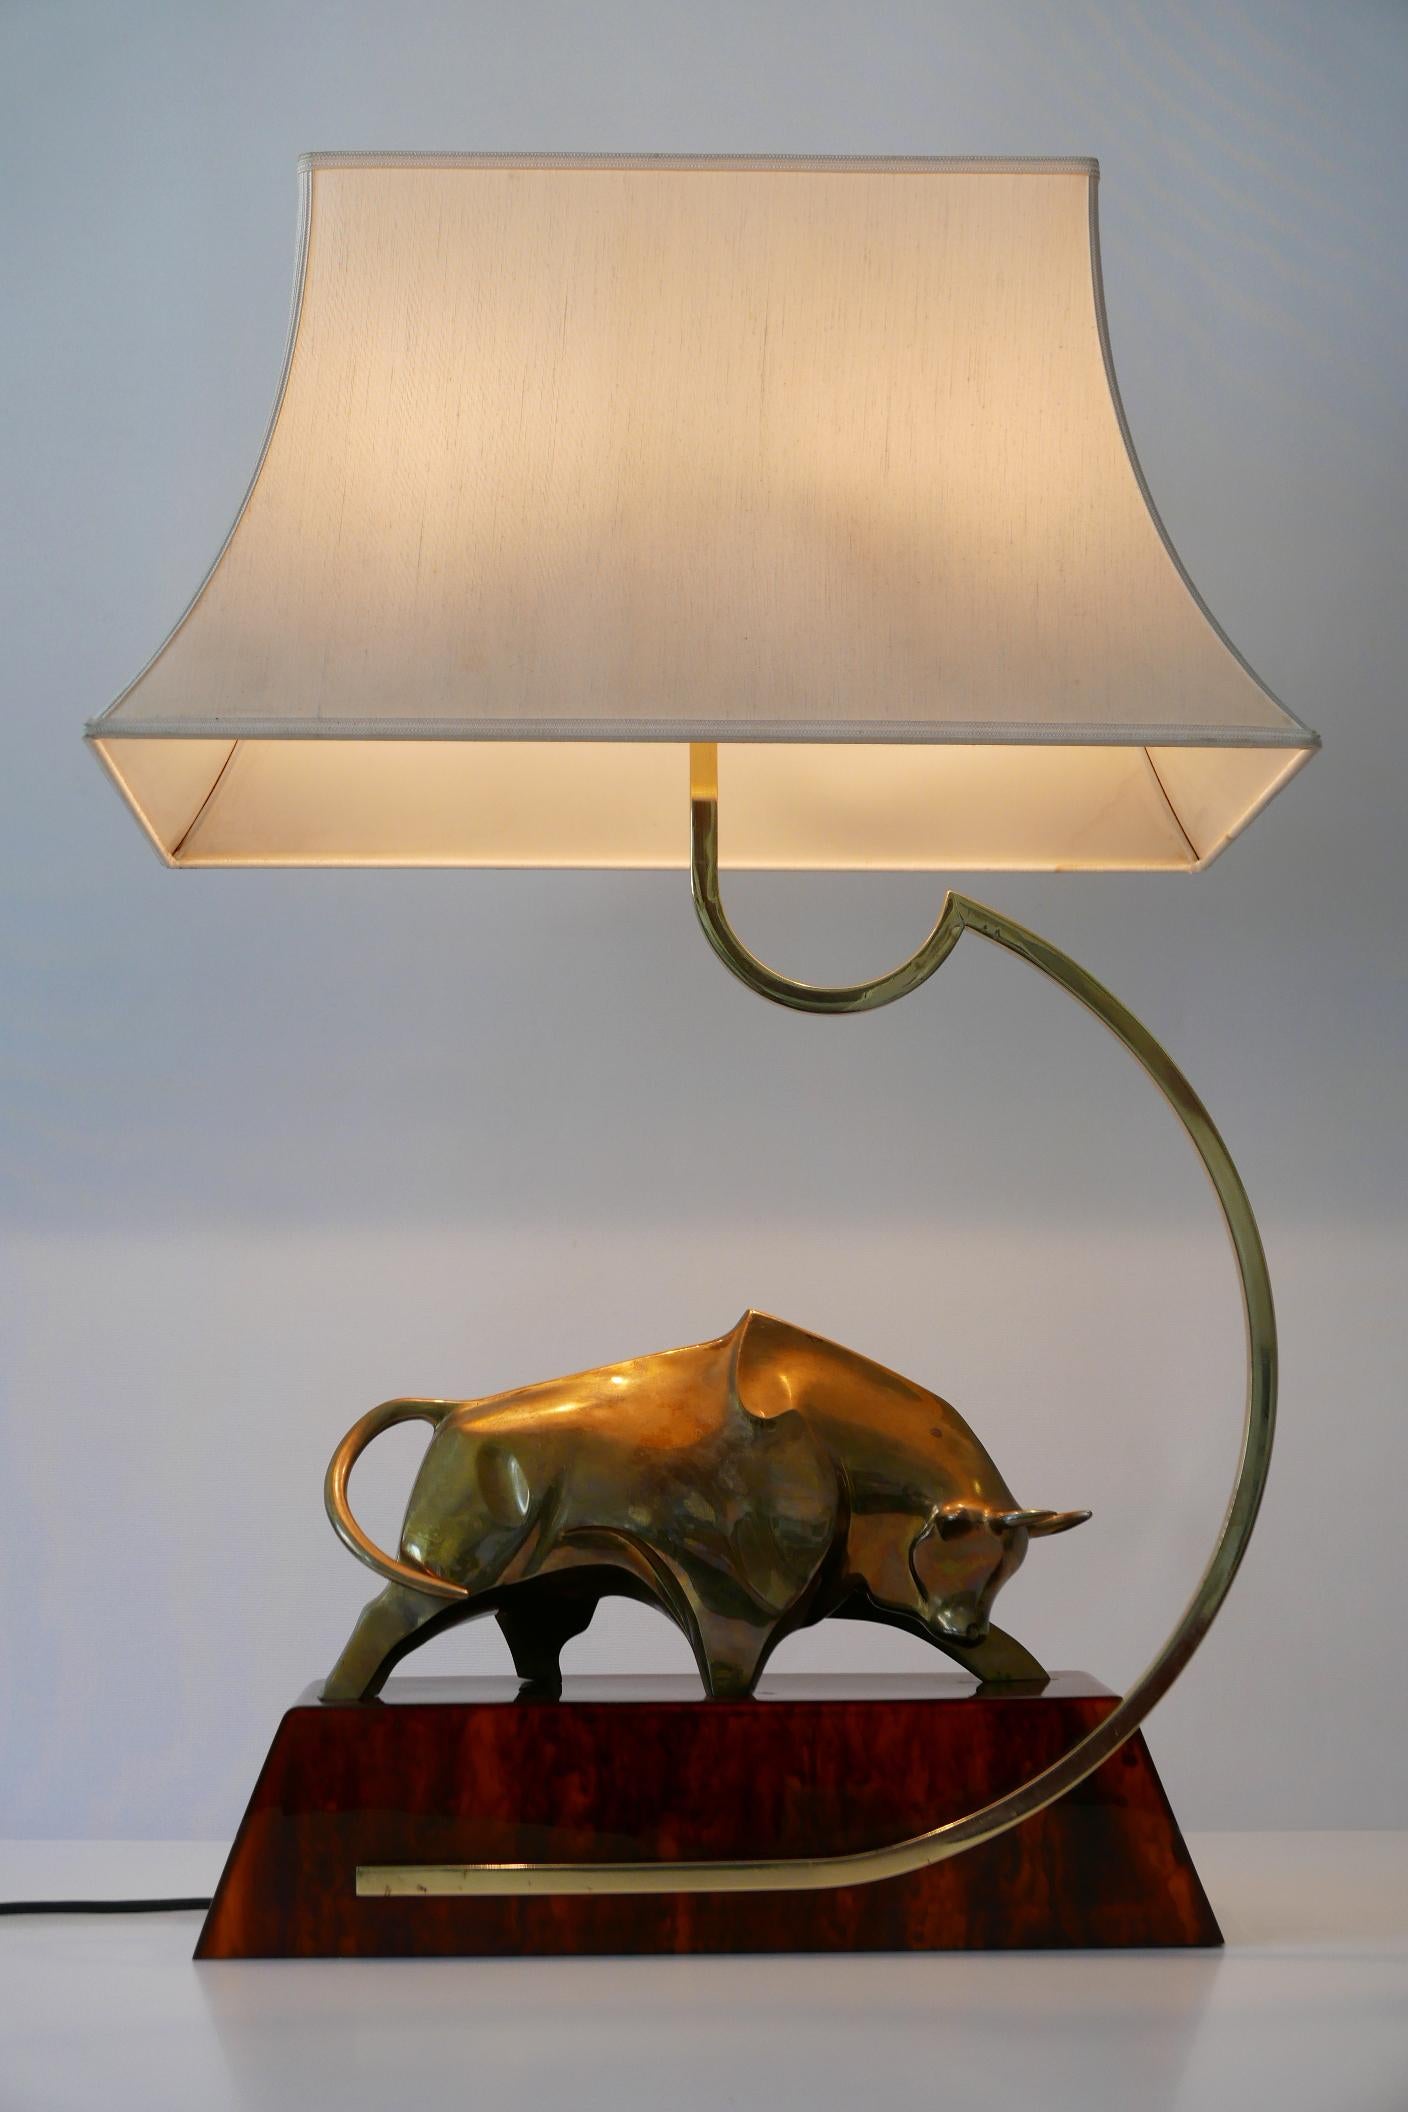 Außergewöhnliche, modernistische Messing-Lichtskulptur oder Tischlampe 'Bull' von D. Delo für Pragos, 1970er Jahre, Italien.
Signiert und nummeriert: d. delo, 40/150 LT.

Ausgeführt in Messing und Harz Basis, die Lampe kommt mit 2 x E27 / E26 Edison